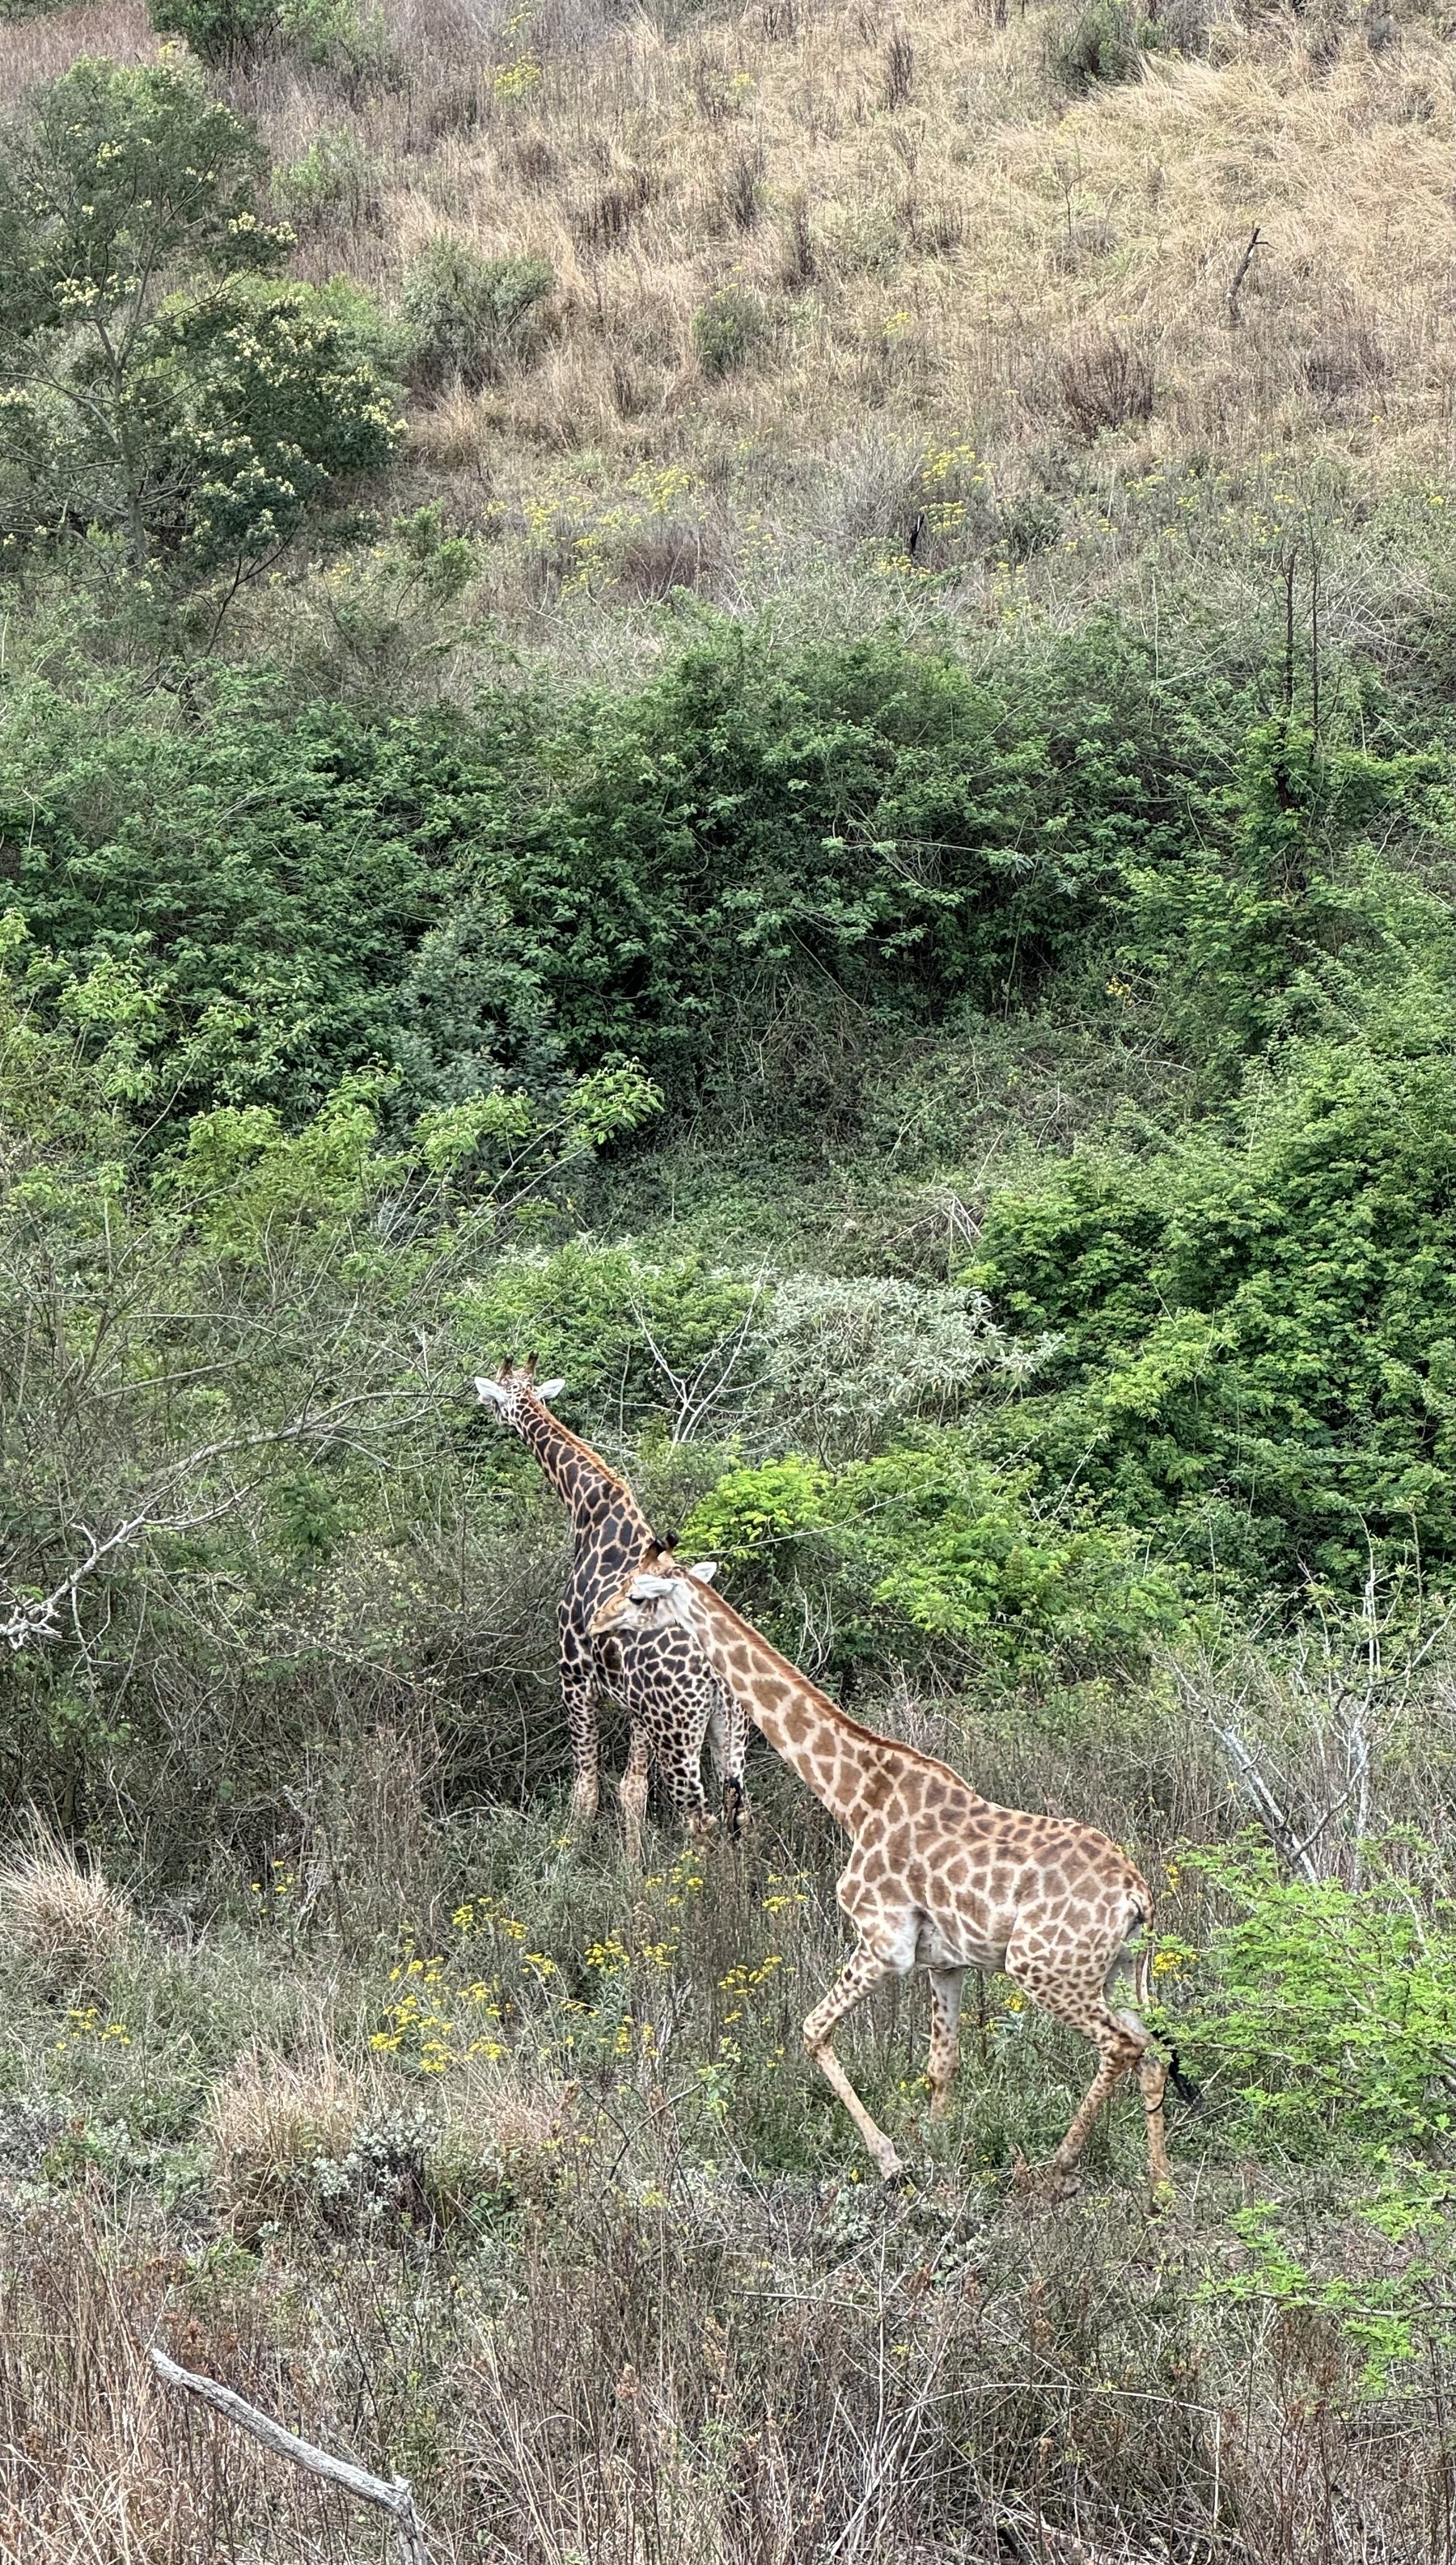 Giraffes amongst some trees.